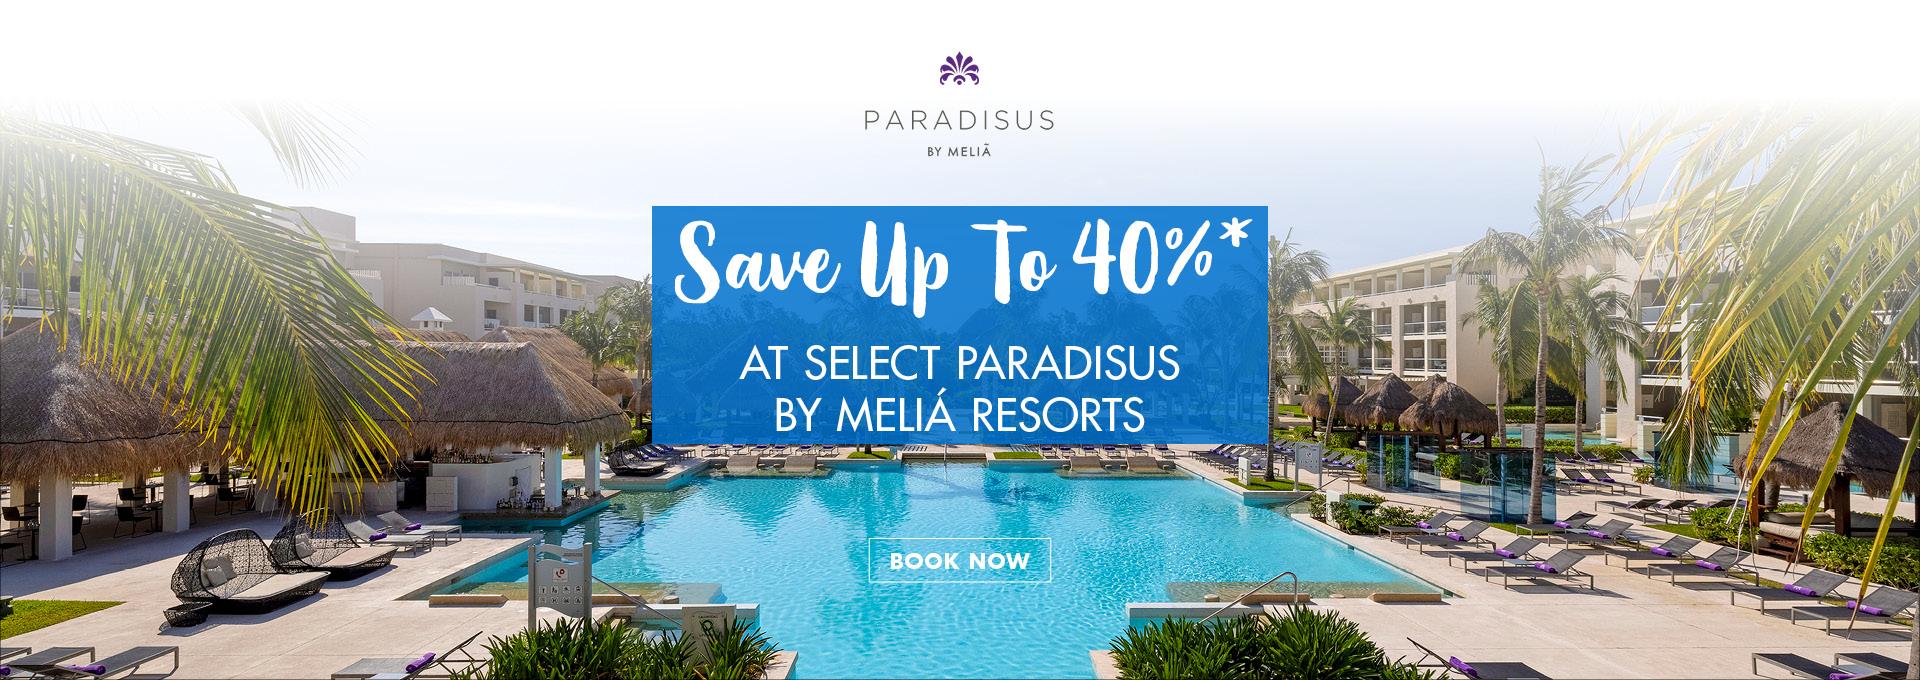 Save up to 40% at select Paradisus by Melia Resorts